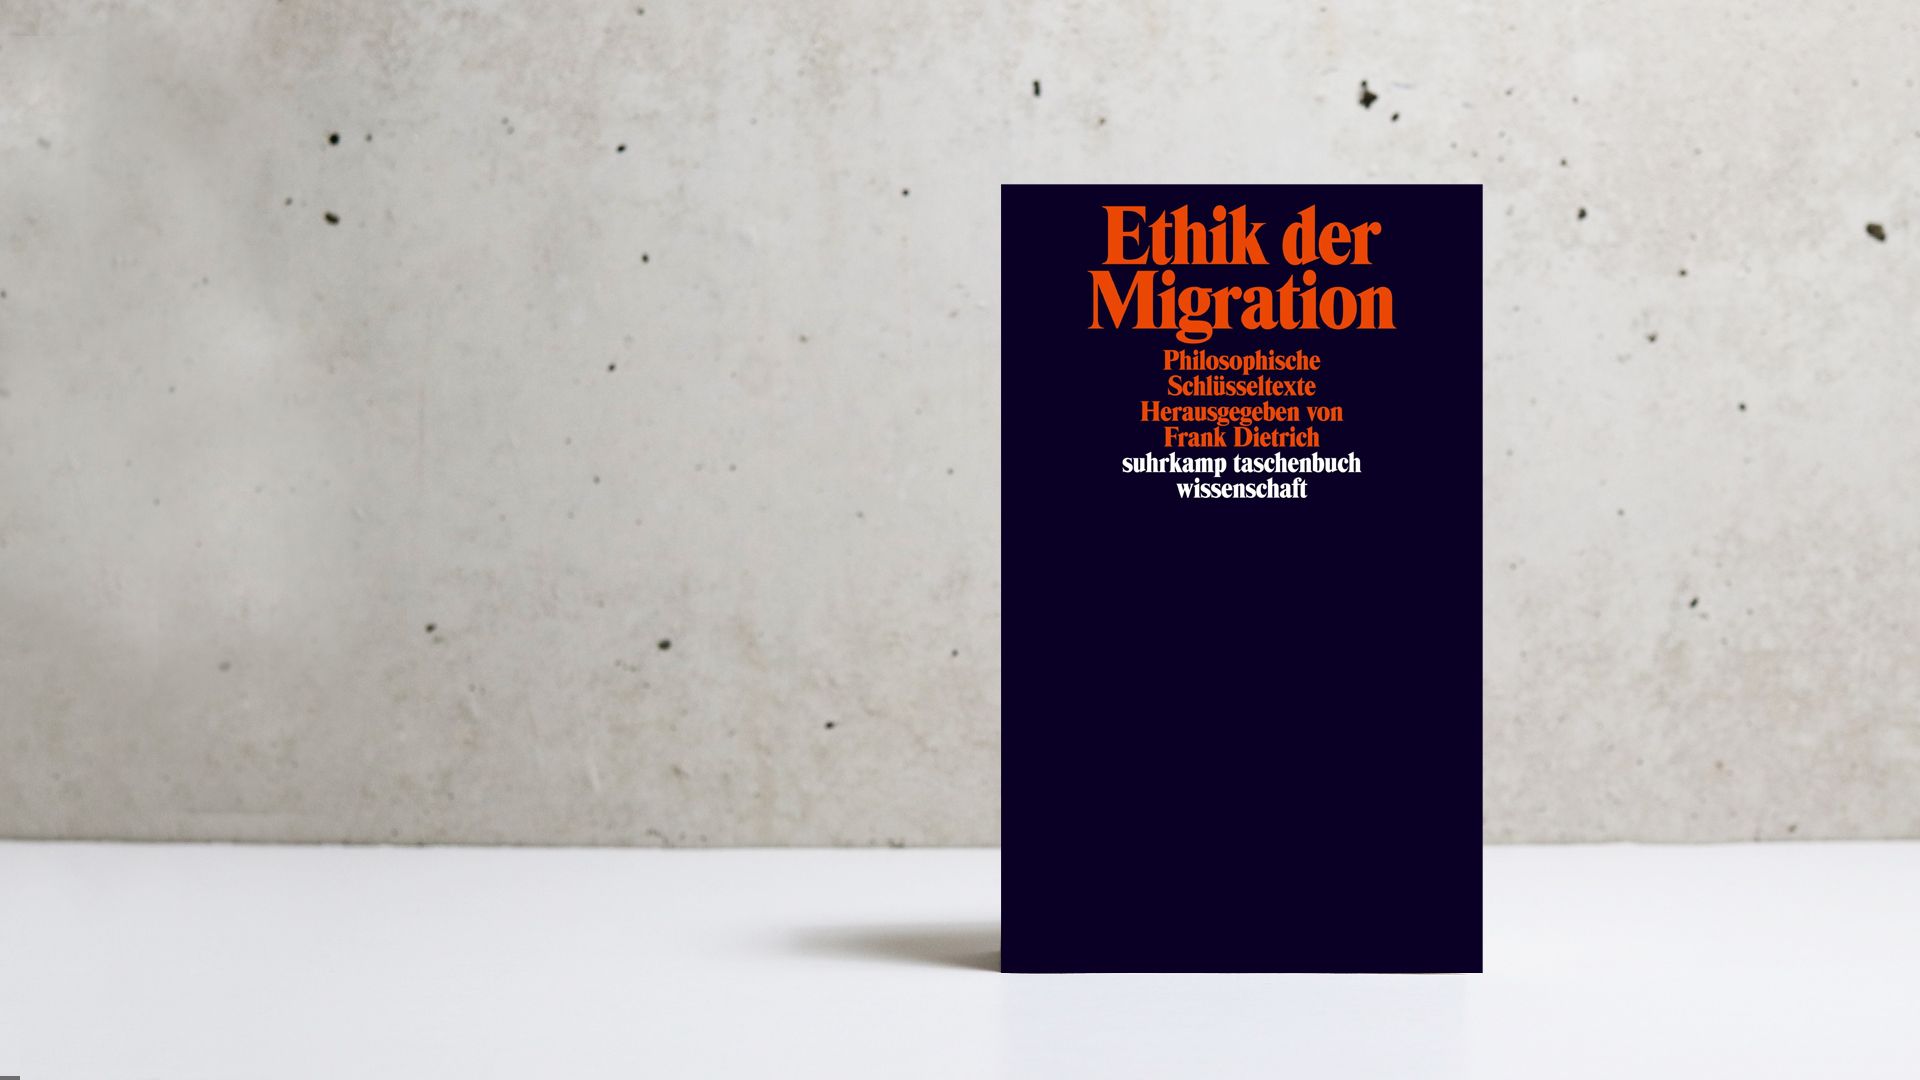 Migration, Mauern, Festung Europa